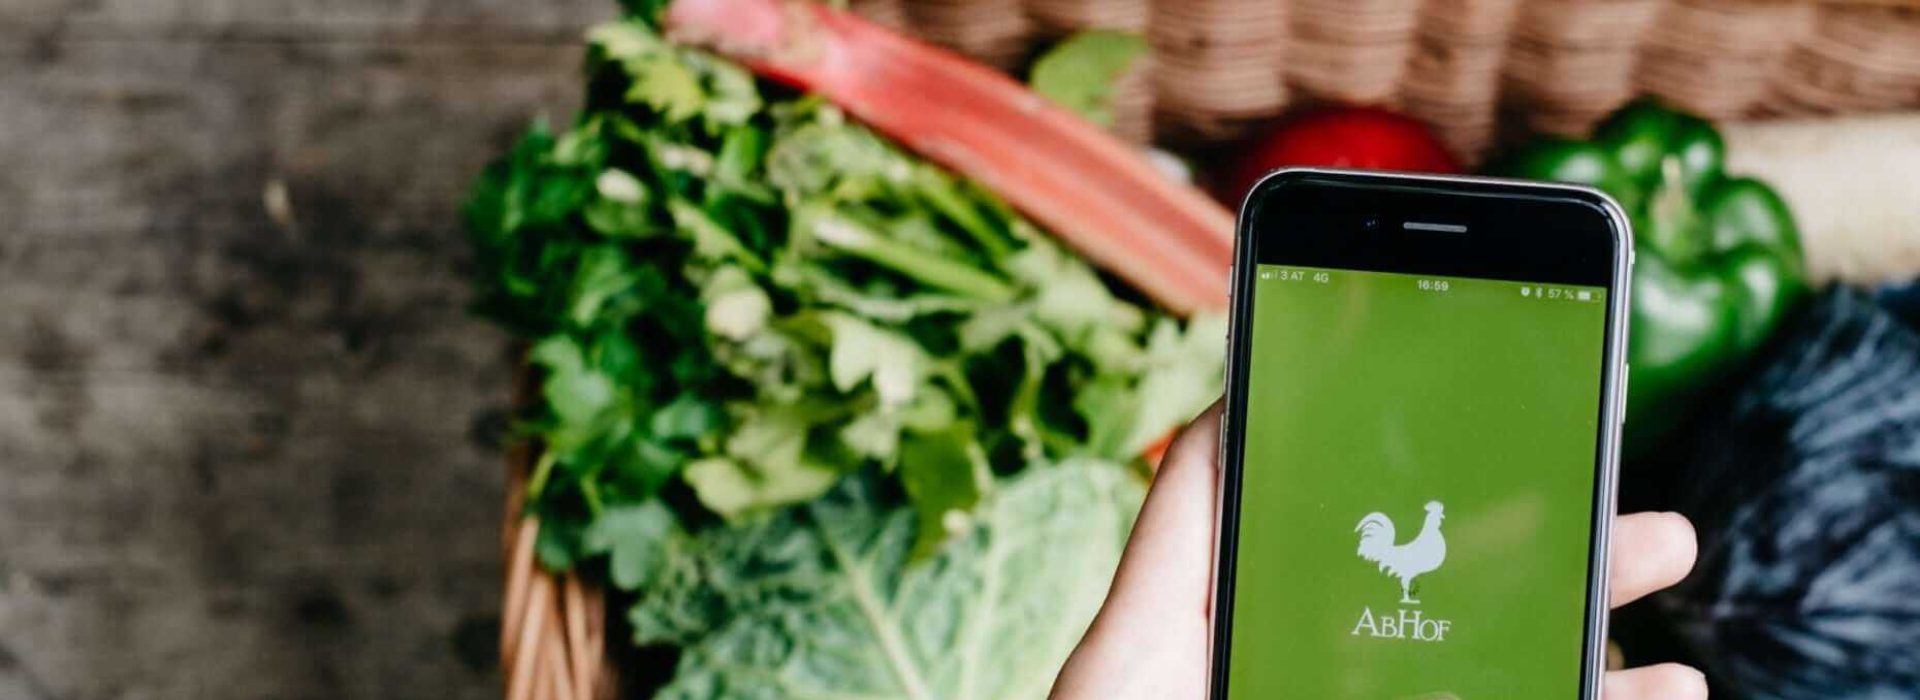 Die Abhof App im Fokus mit Gemüse im Hintergrund